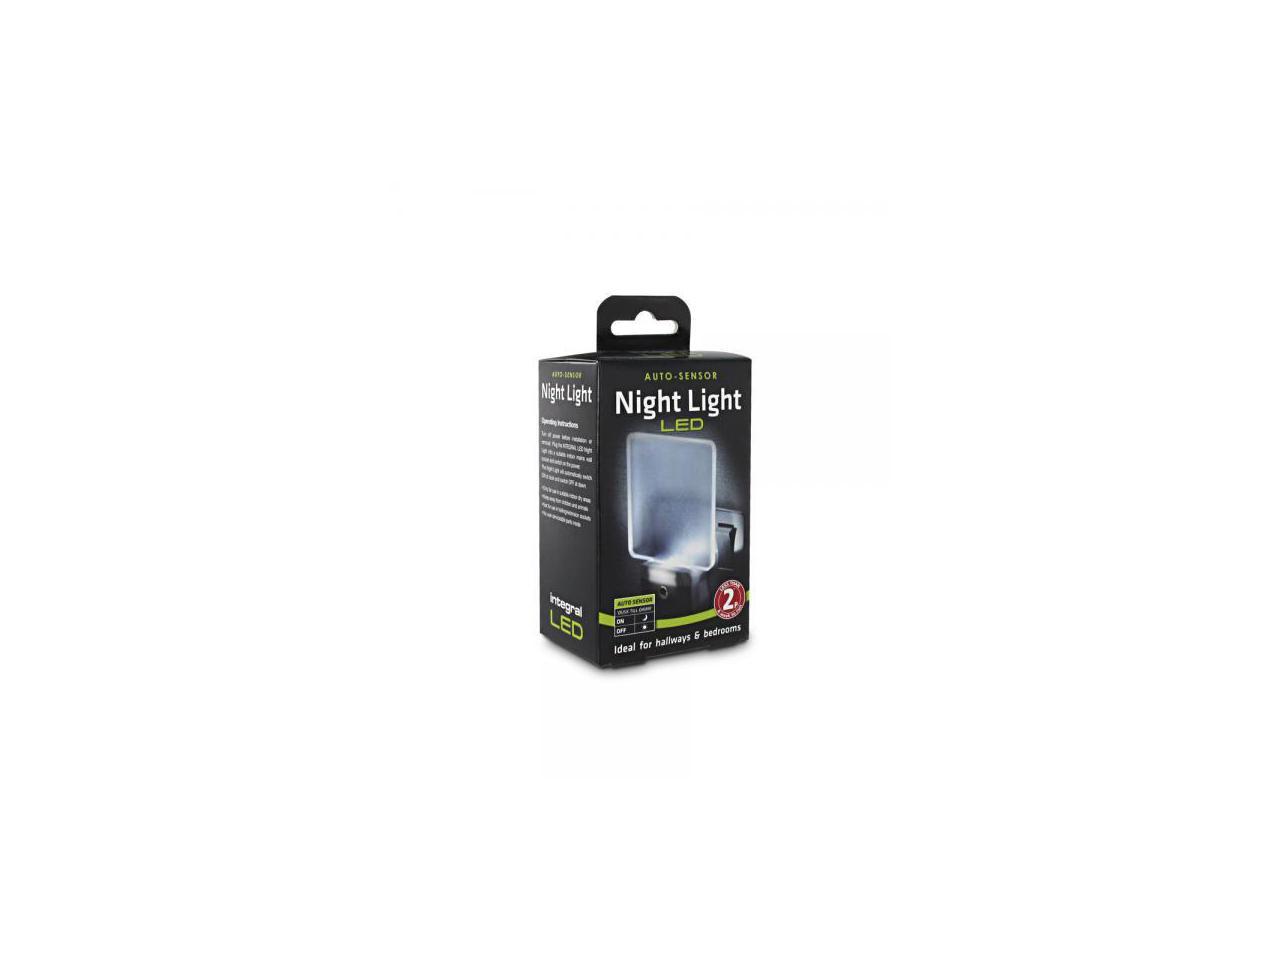 Integral Auto-Sensor LED Night Light (UK 3-pin plug)